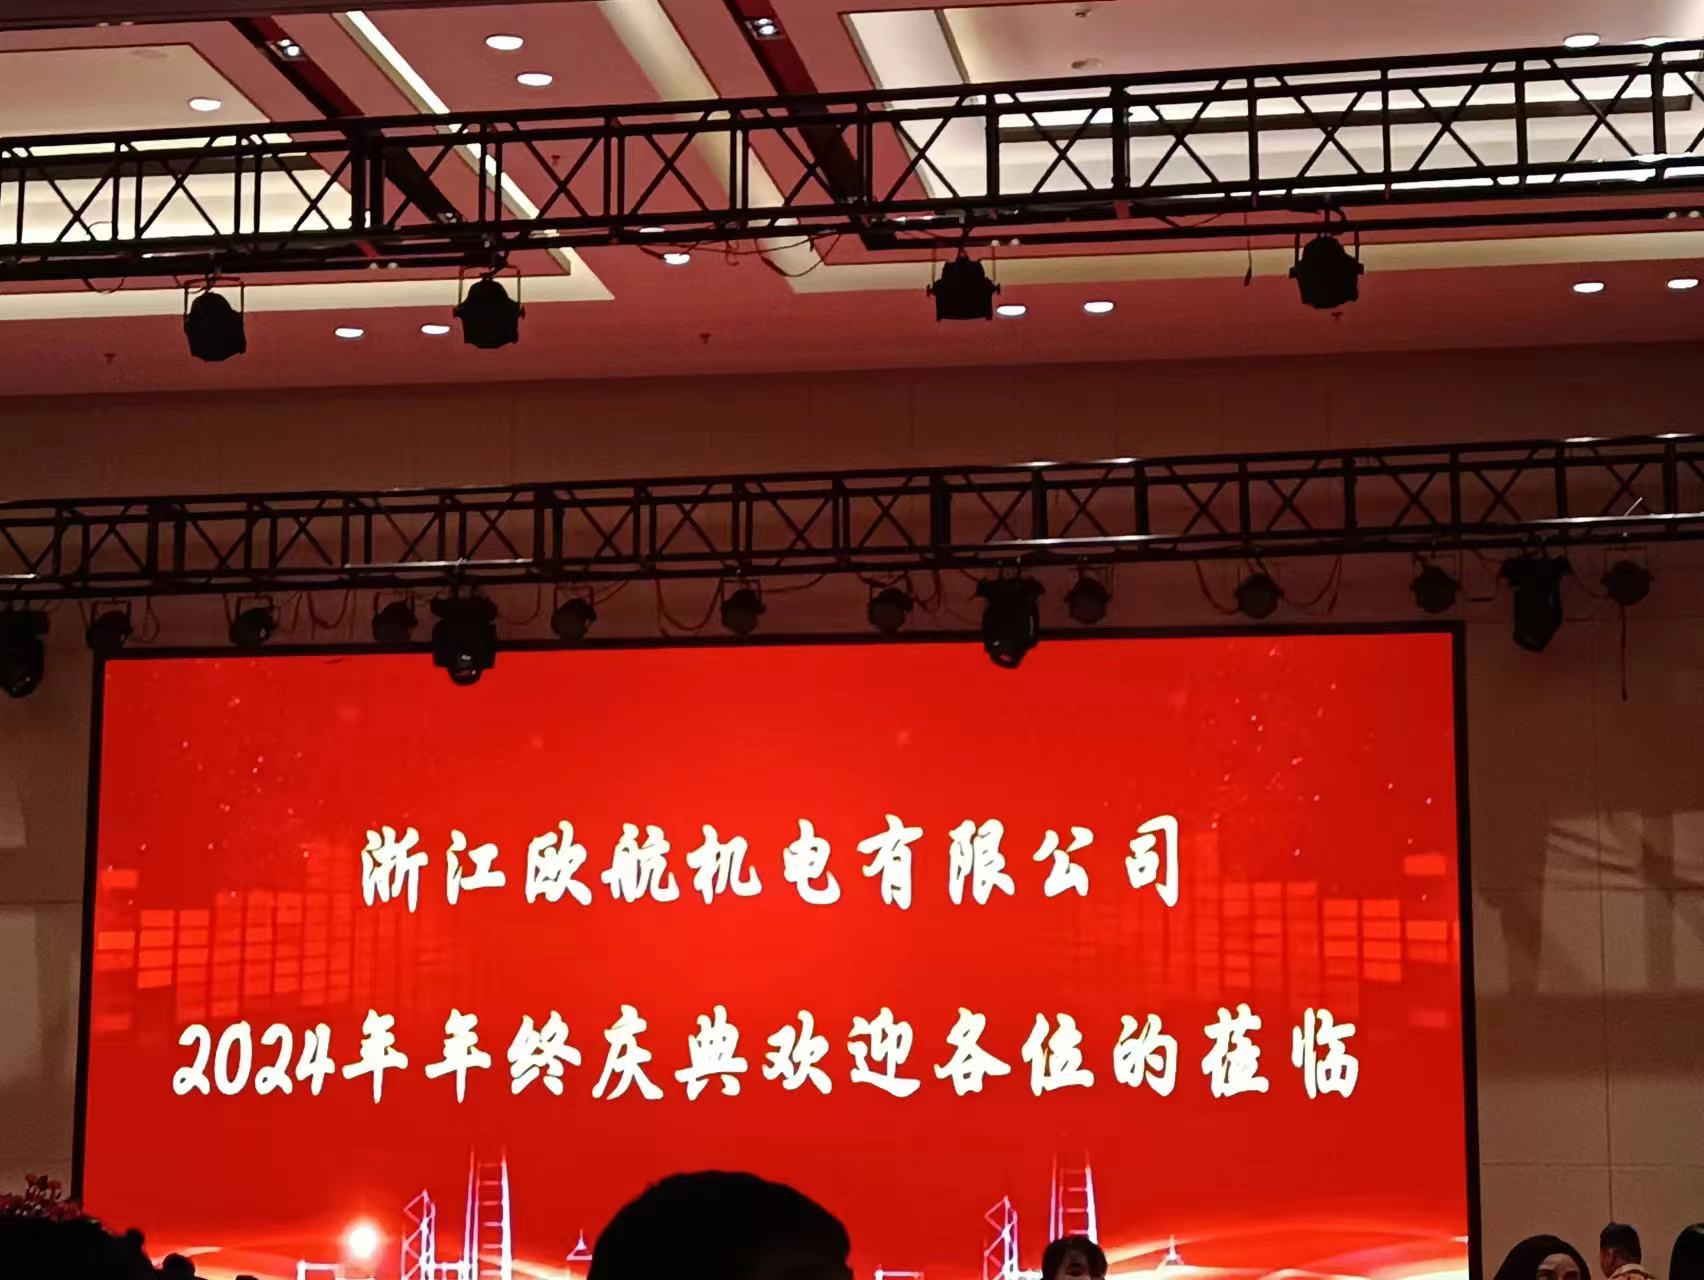 Ouhang årsfest i 2024